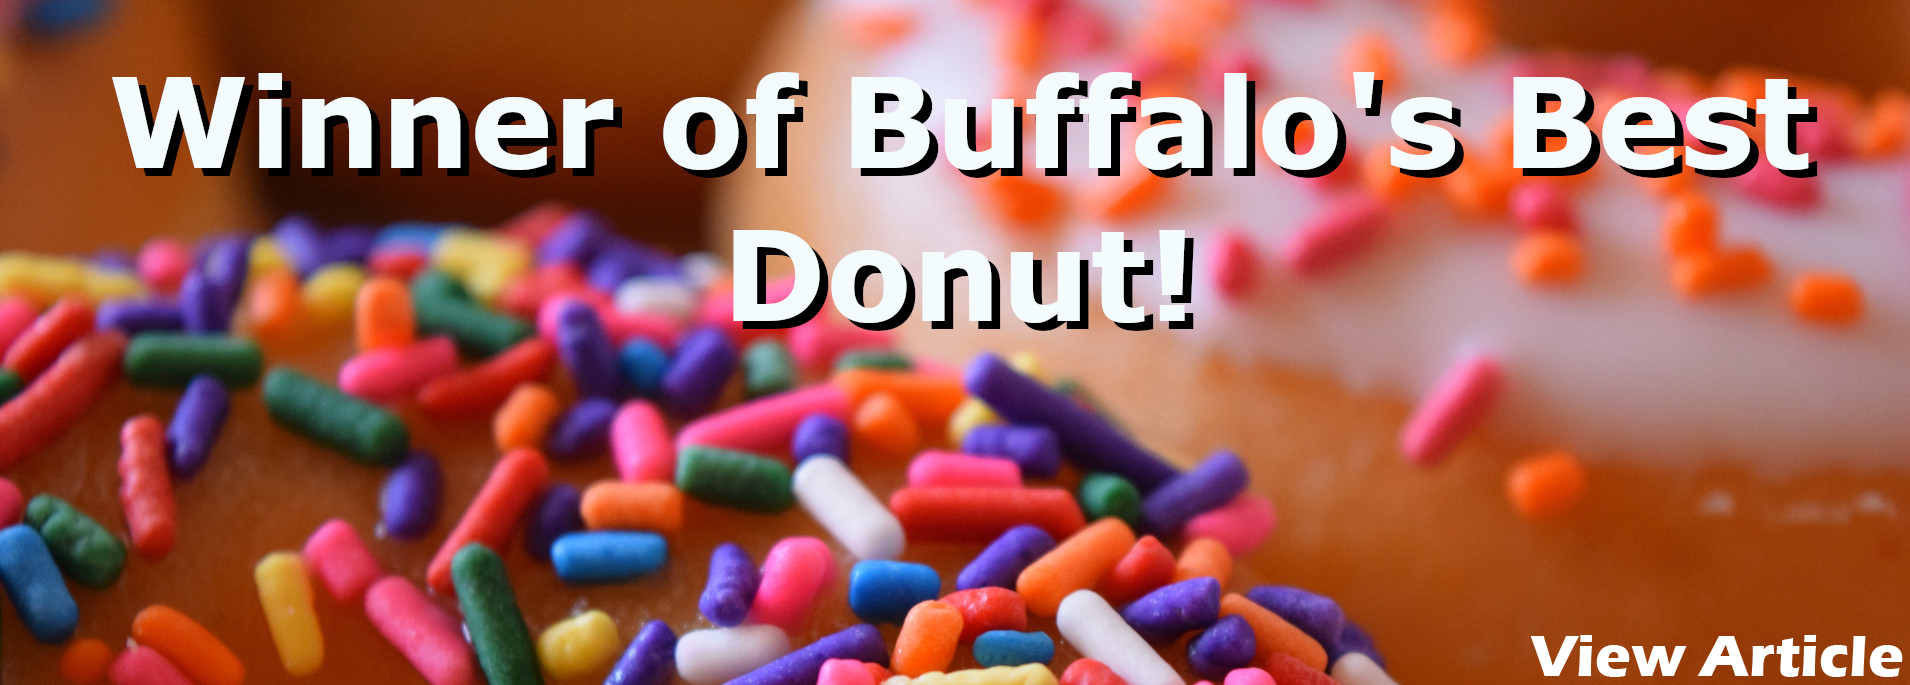 Buffalo's Best Donut